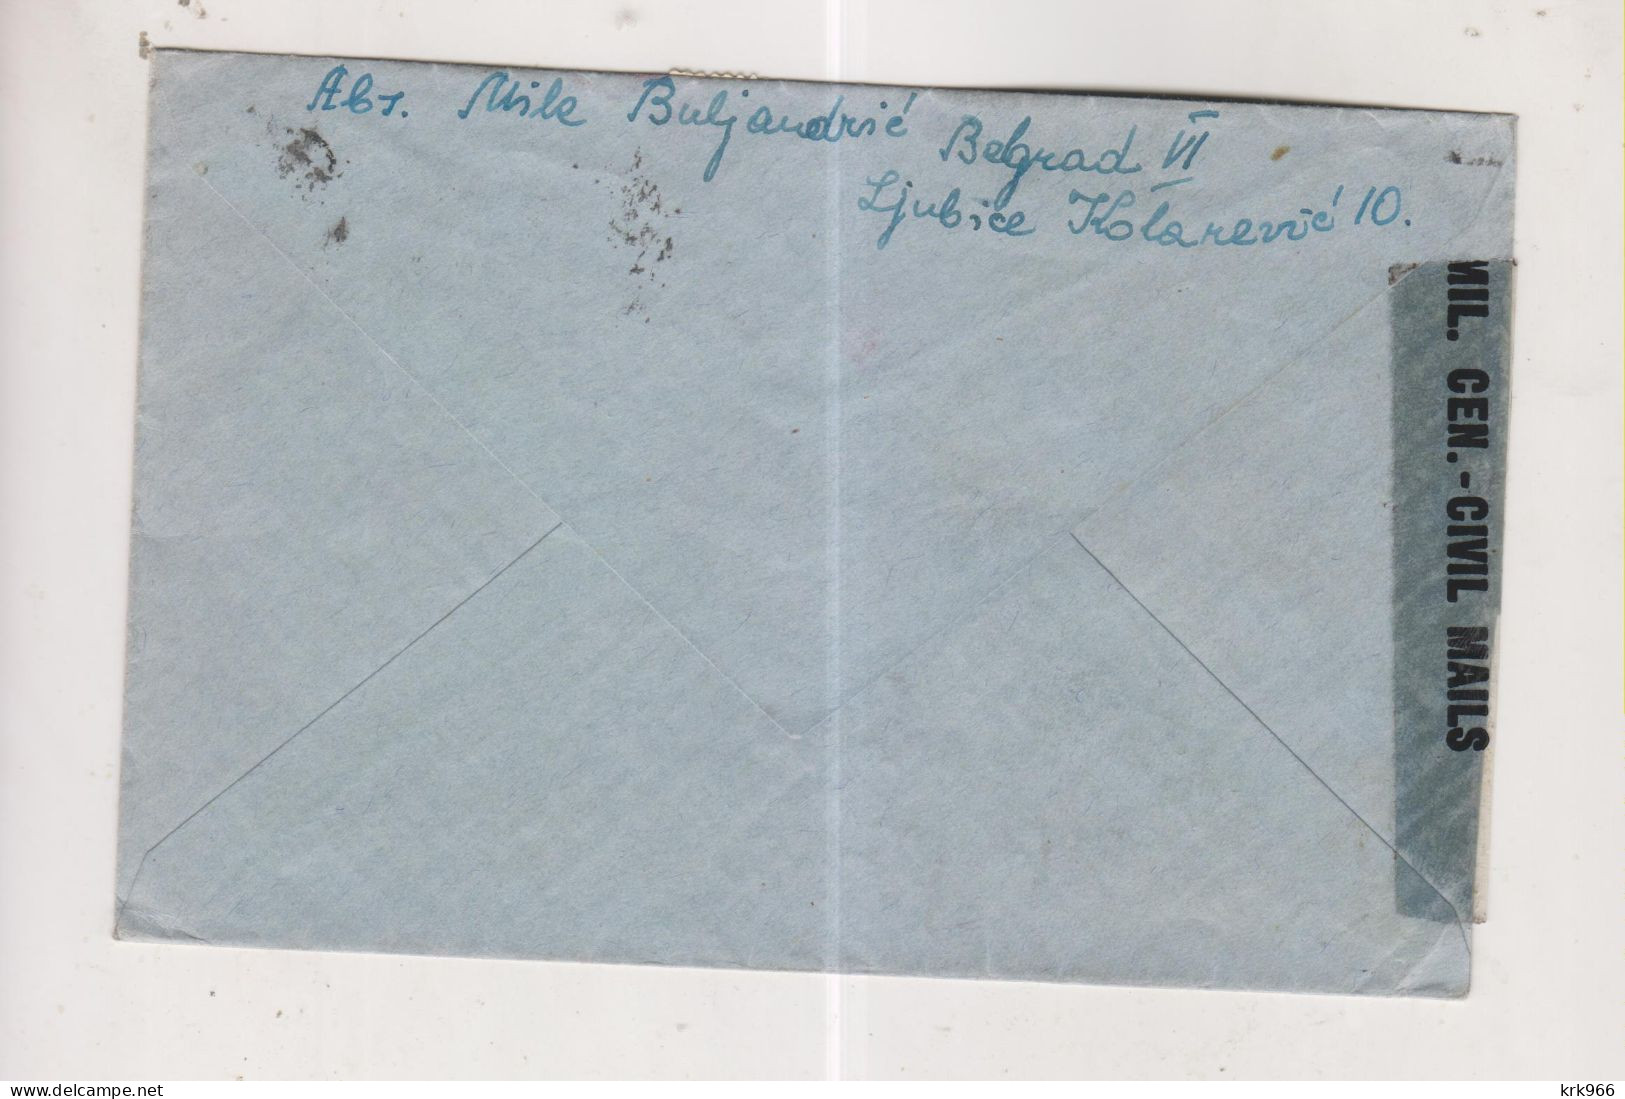 YUGOSLAVIA,1946 BEOGRAD  Censored  Cover To Austria - Cartas & Documentos